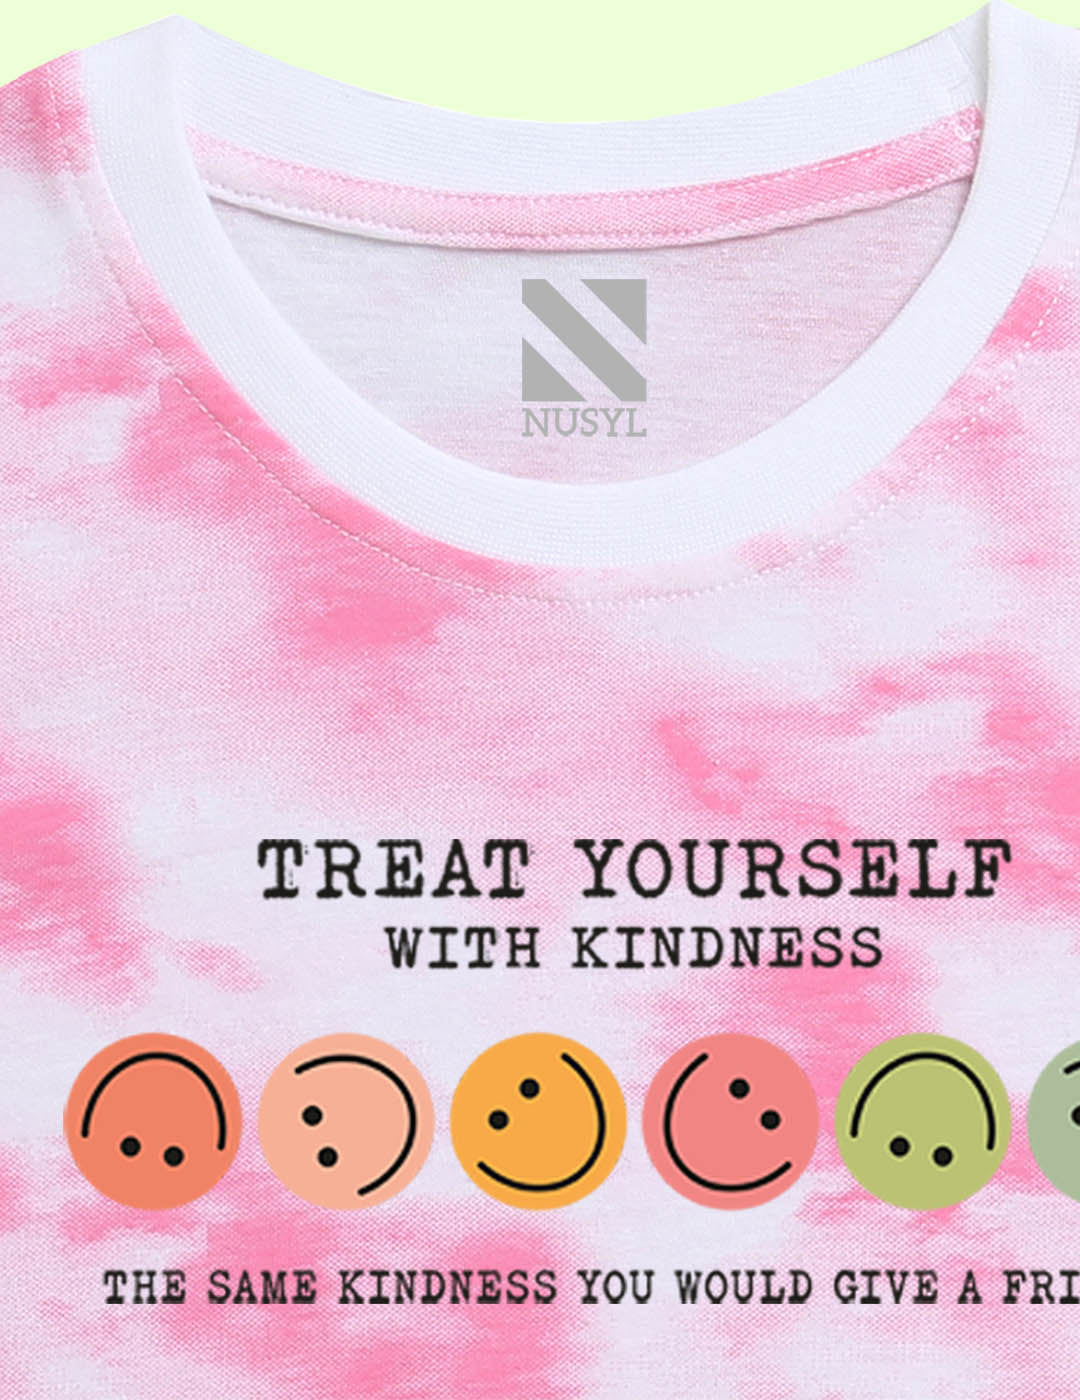 Nusyl girls pink smilies printed tie & dye tshirt.